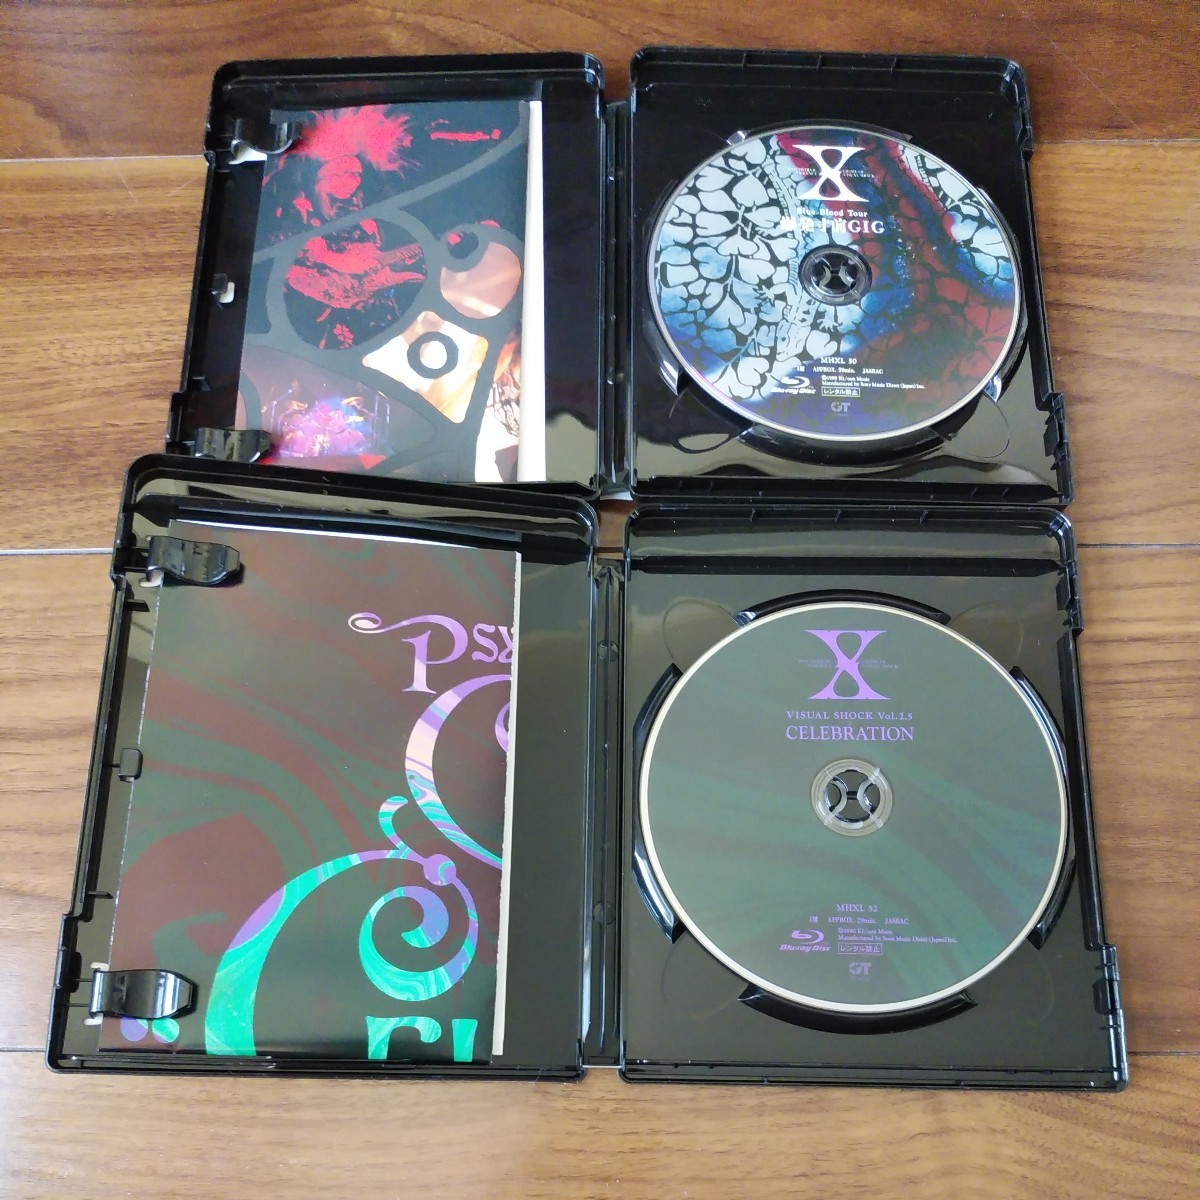 【送料無料】X JAPAN Blu-ray 2セット Blue Blood Tour 爆発寸前GIG VISUAL SHOCK Vol.2.5 CELEBRATION エックジャパン/ブルーレイ DVD_画像3